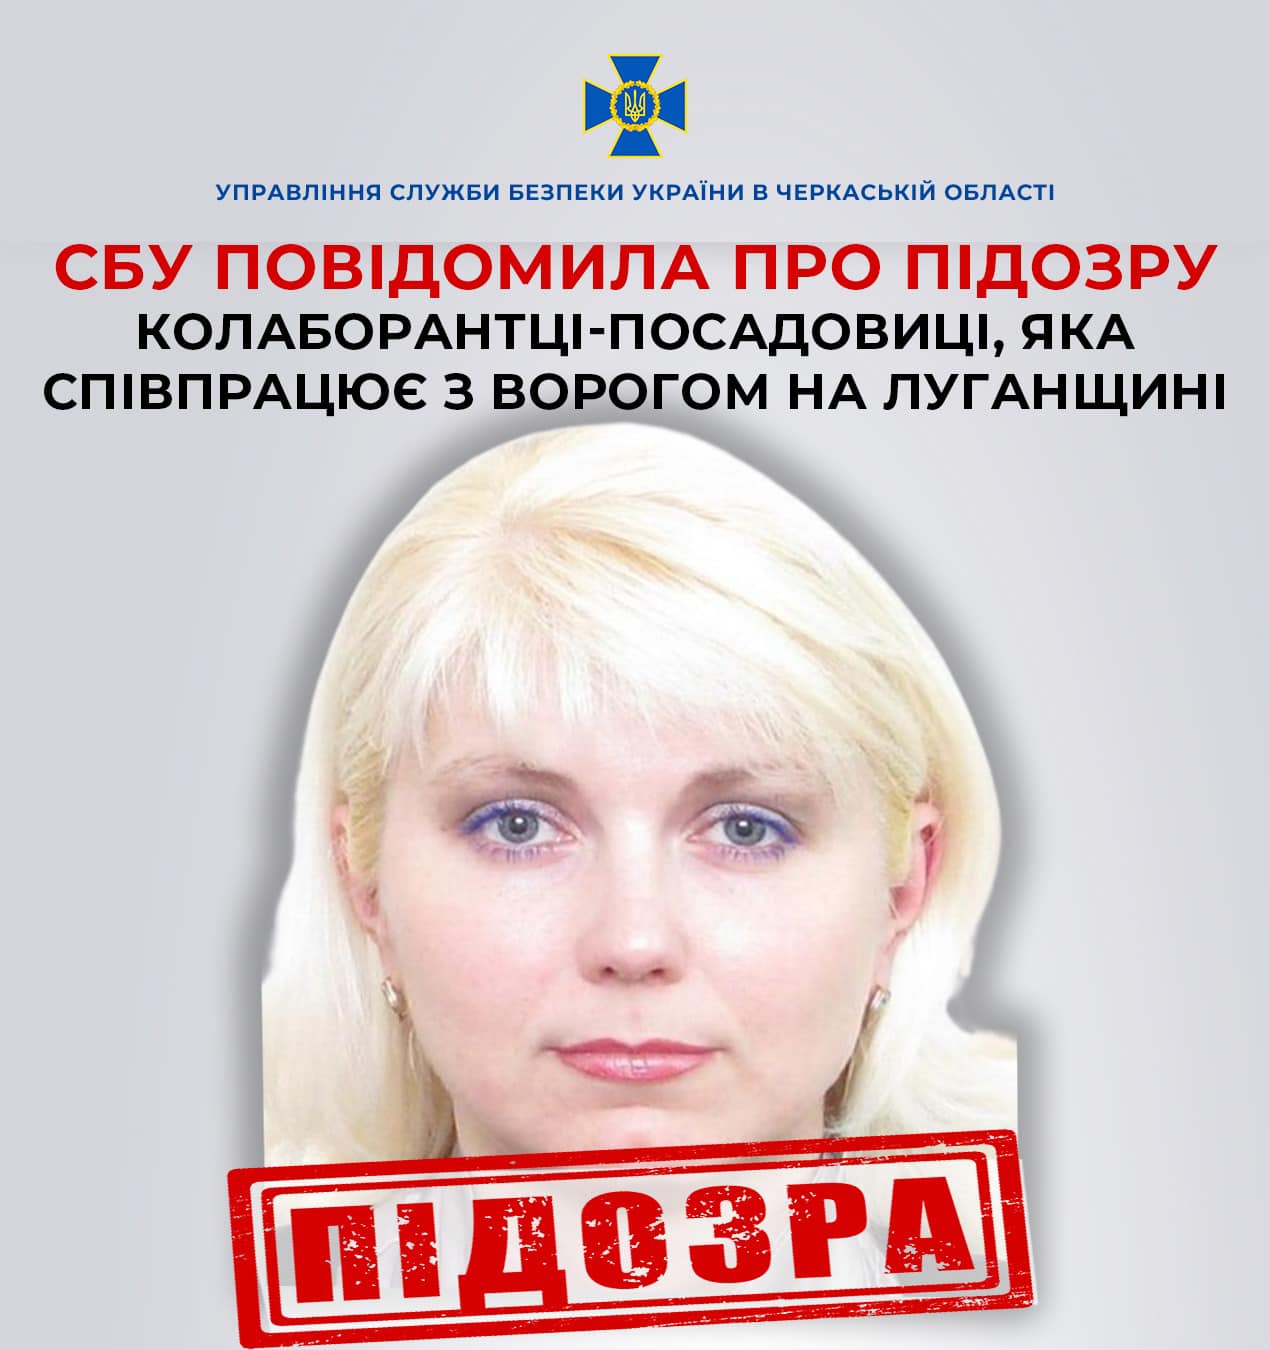 Співпрацює з ворогом на Луганщині: СБУ повідомила про підозру колаборантці-посадовиці